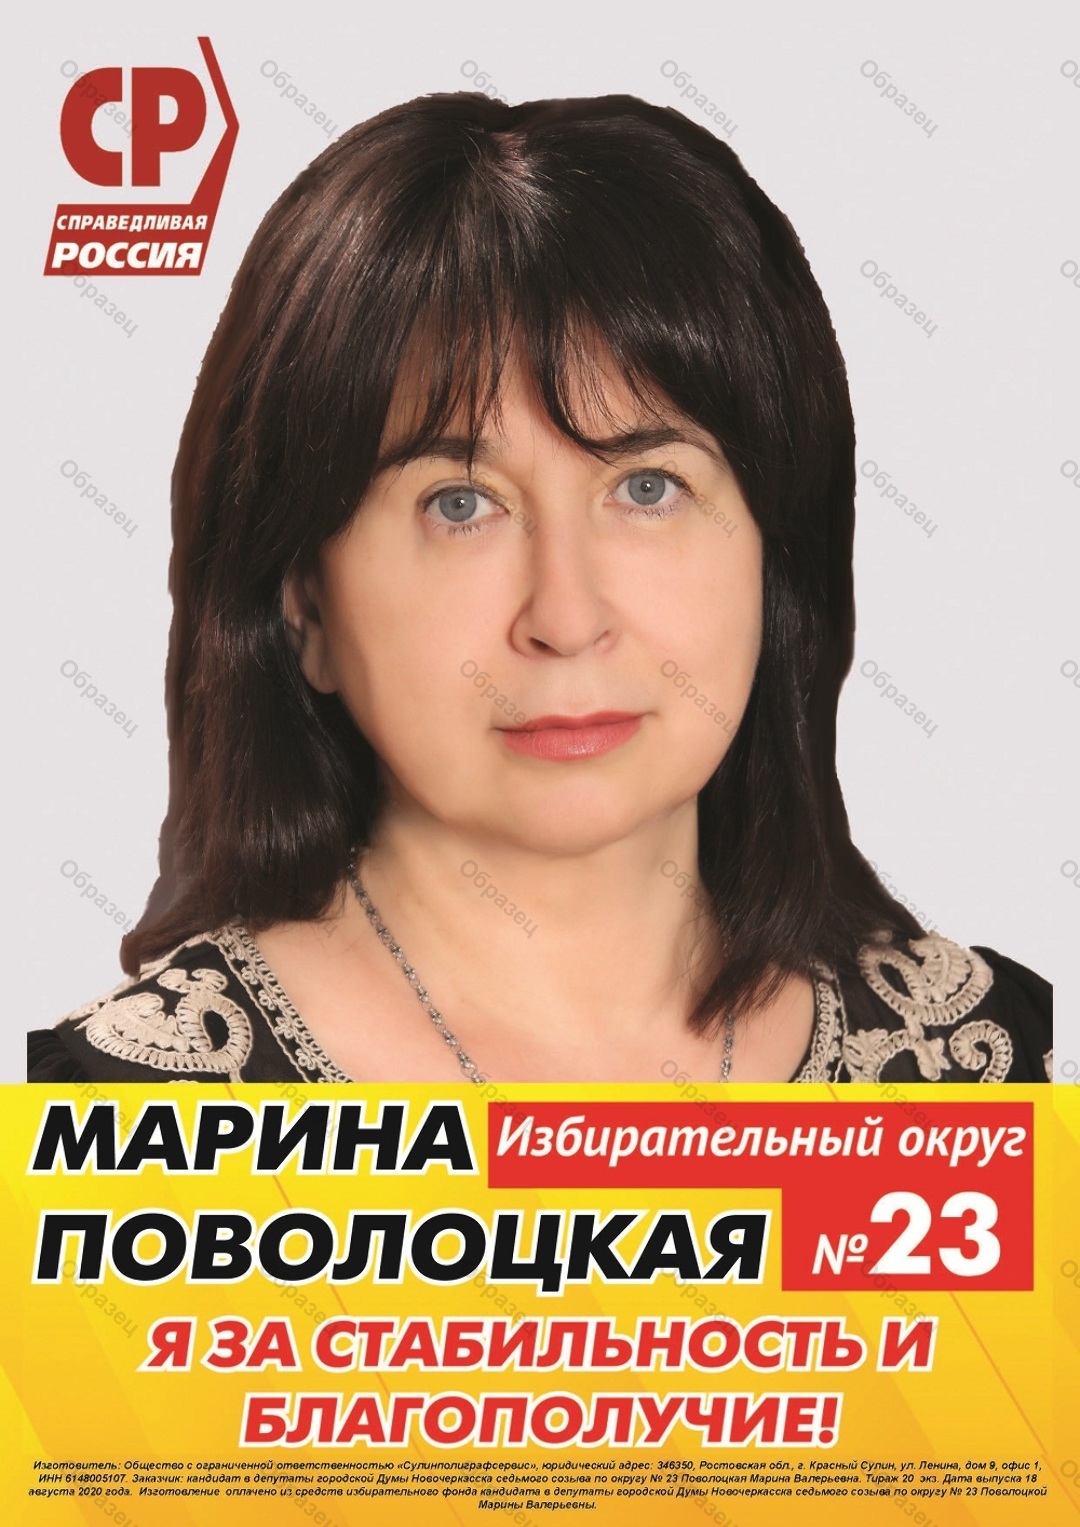 Марина Поволоцкая Новочеркасск